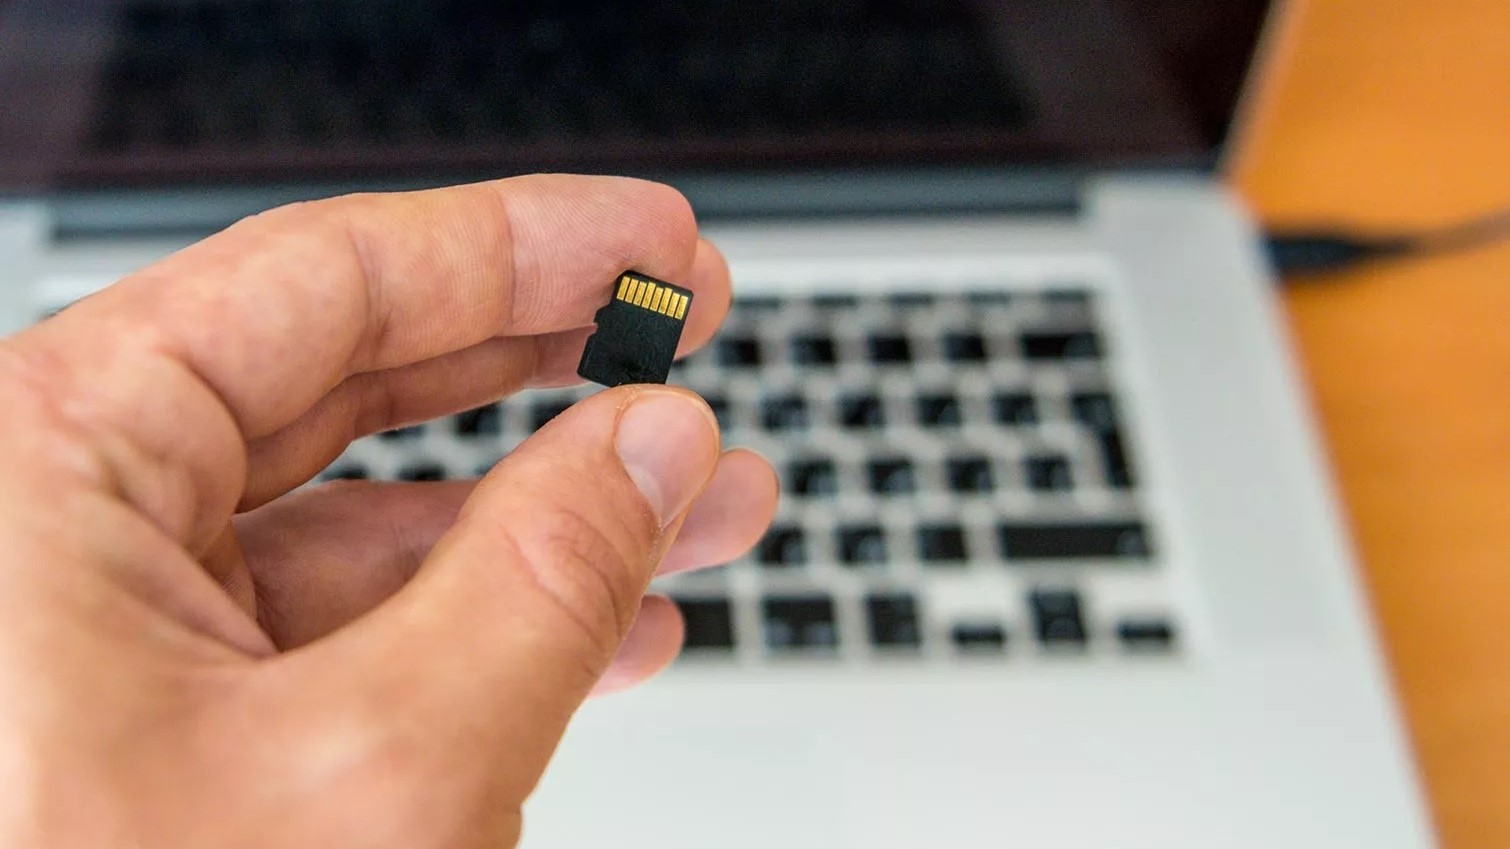 Tidal Tips показывает карту micro SD, которую держат между кончиками пальцев, на фоне ноутбука MacBook Pro.